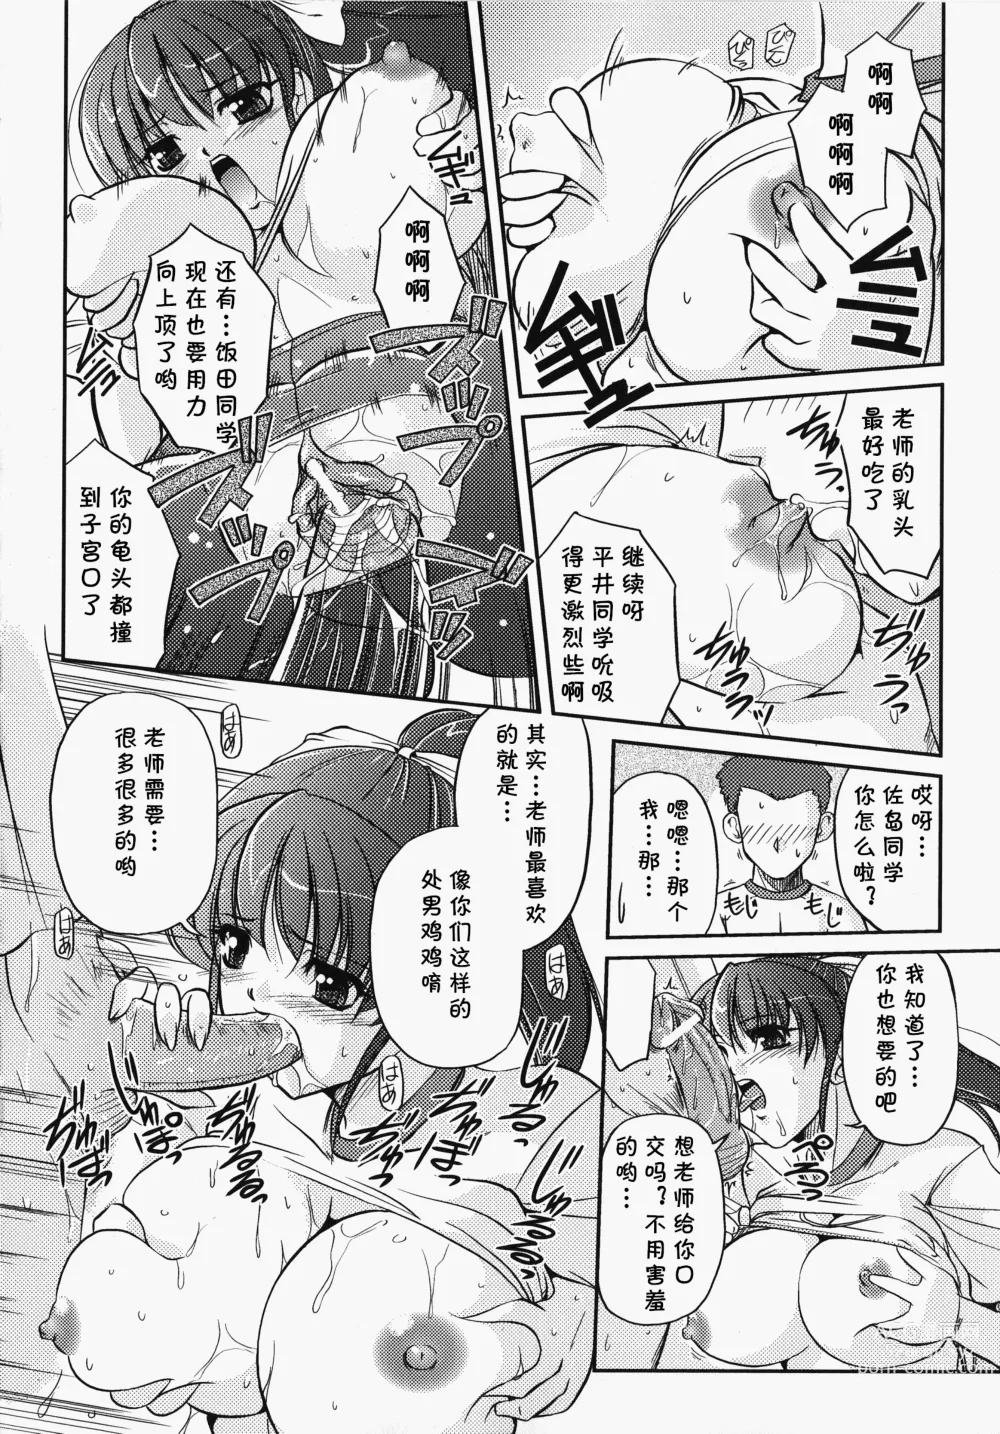 Page 13 of manga Bokura no Sensei  to  Himitsu  Jisshuu